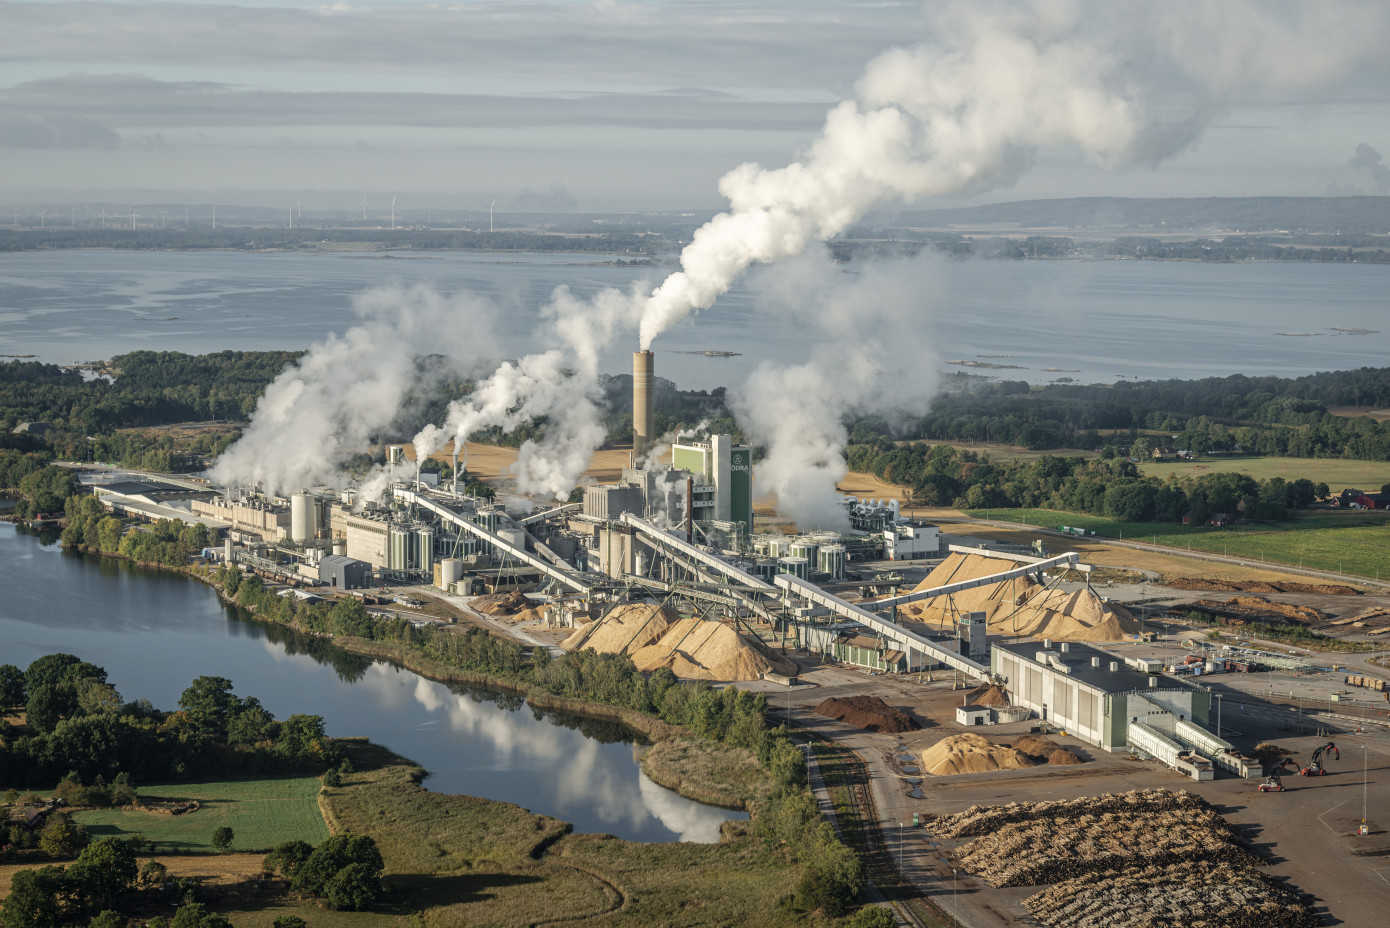 Södra увеличит производство «зеленой» электроэнергии в Швеции